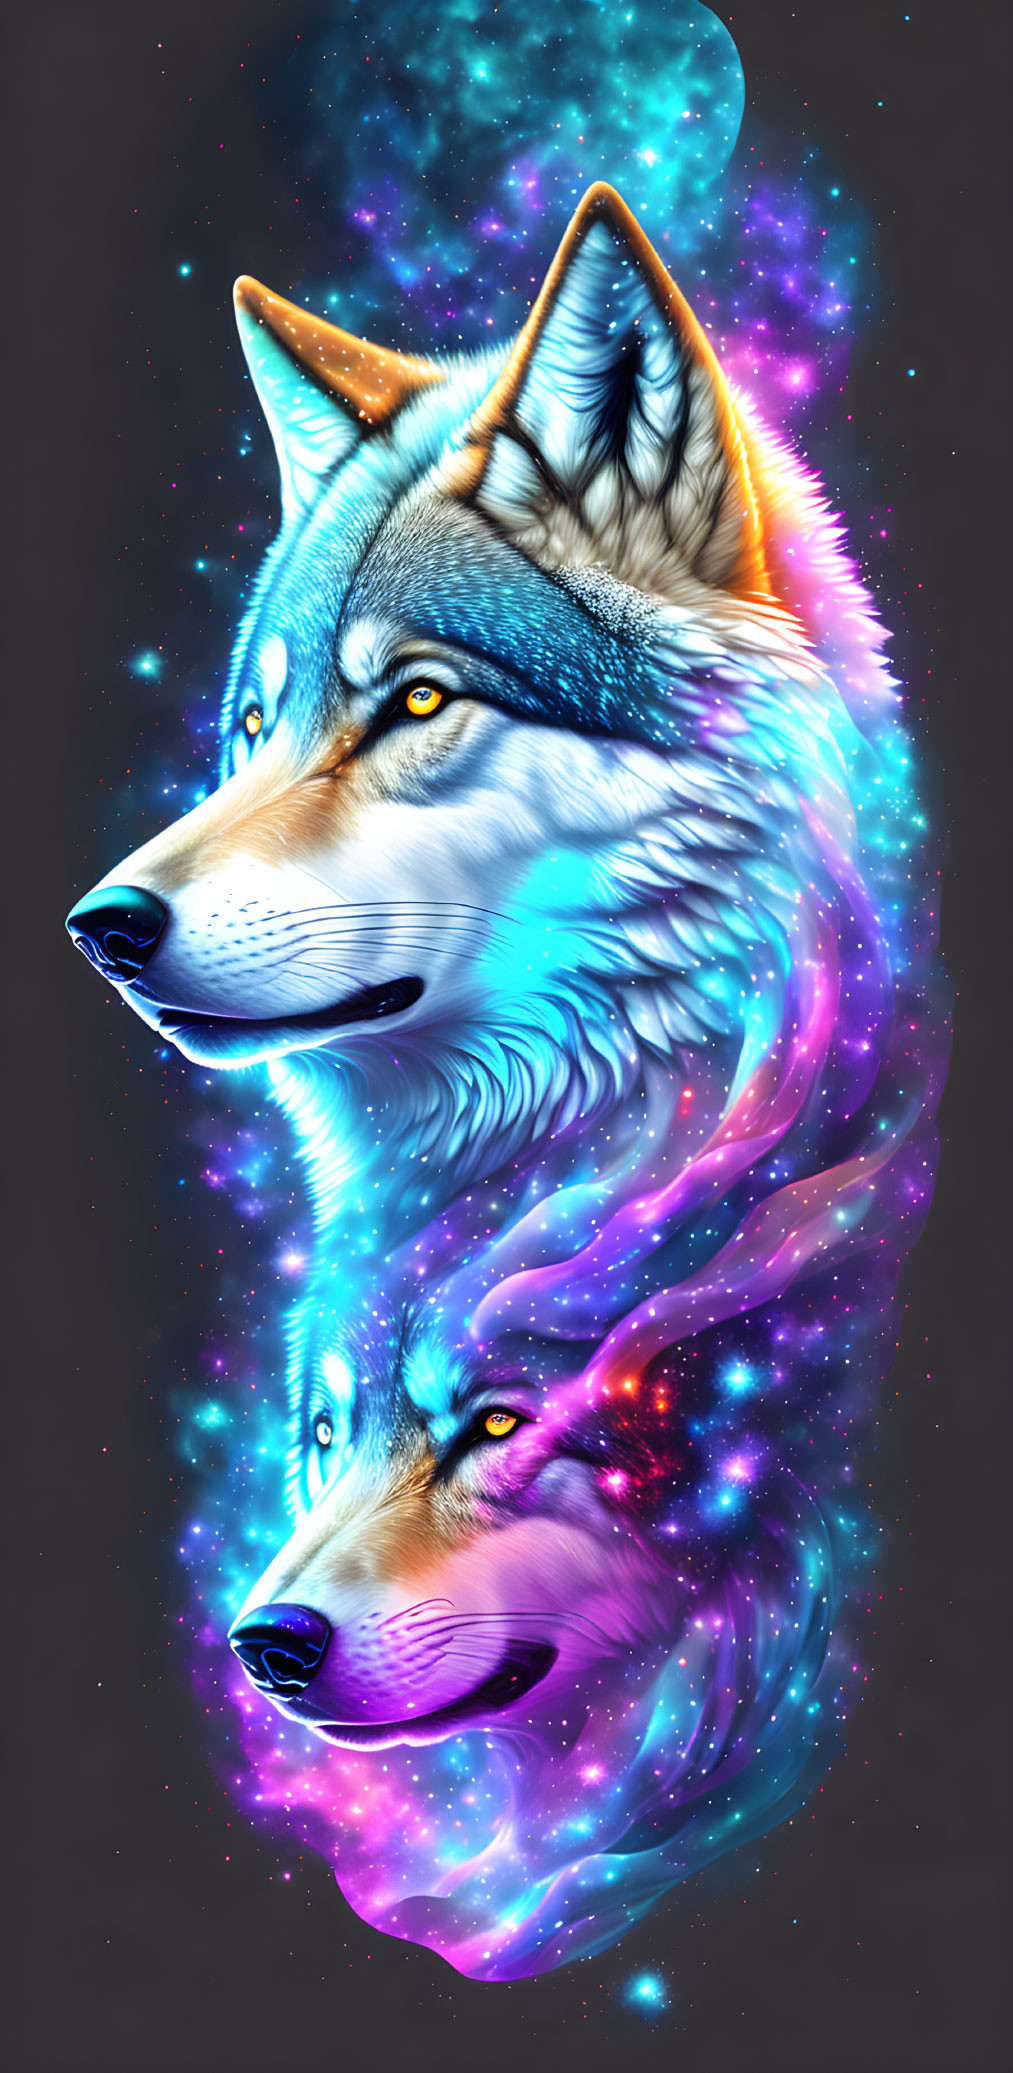 Vibrant digital art: Two wolves in cosmic, neon palette